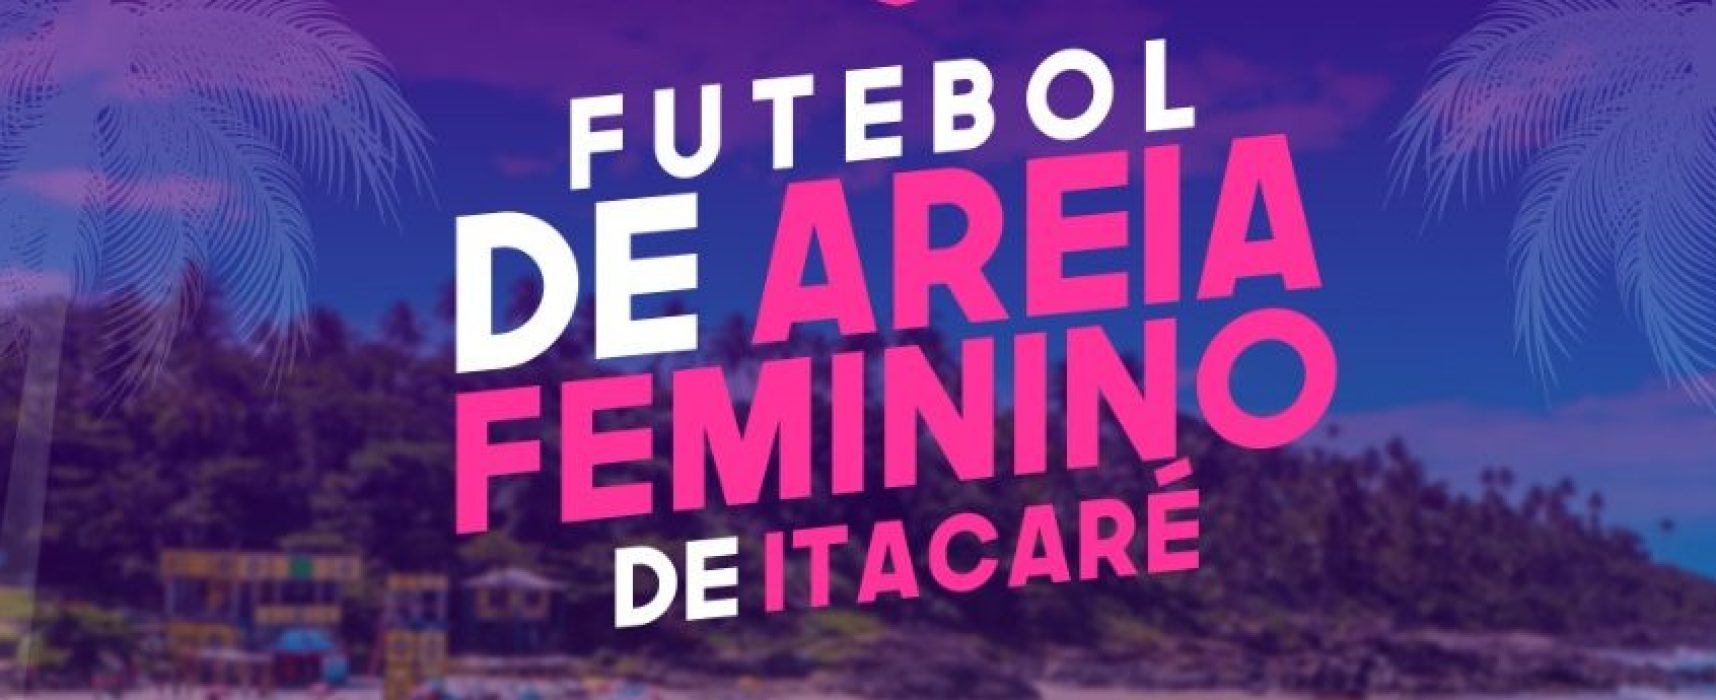 I Copa de Futebol de Areia Feminino de Itacaré começa neste sábado